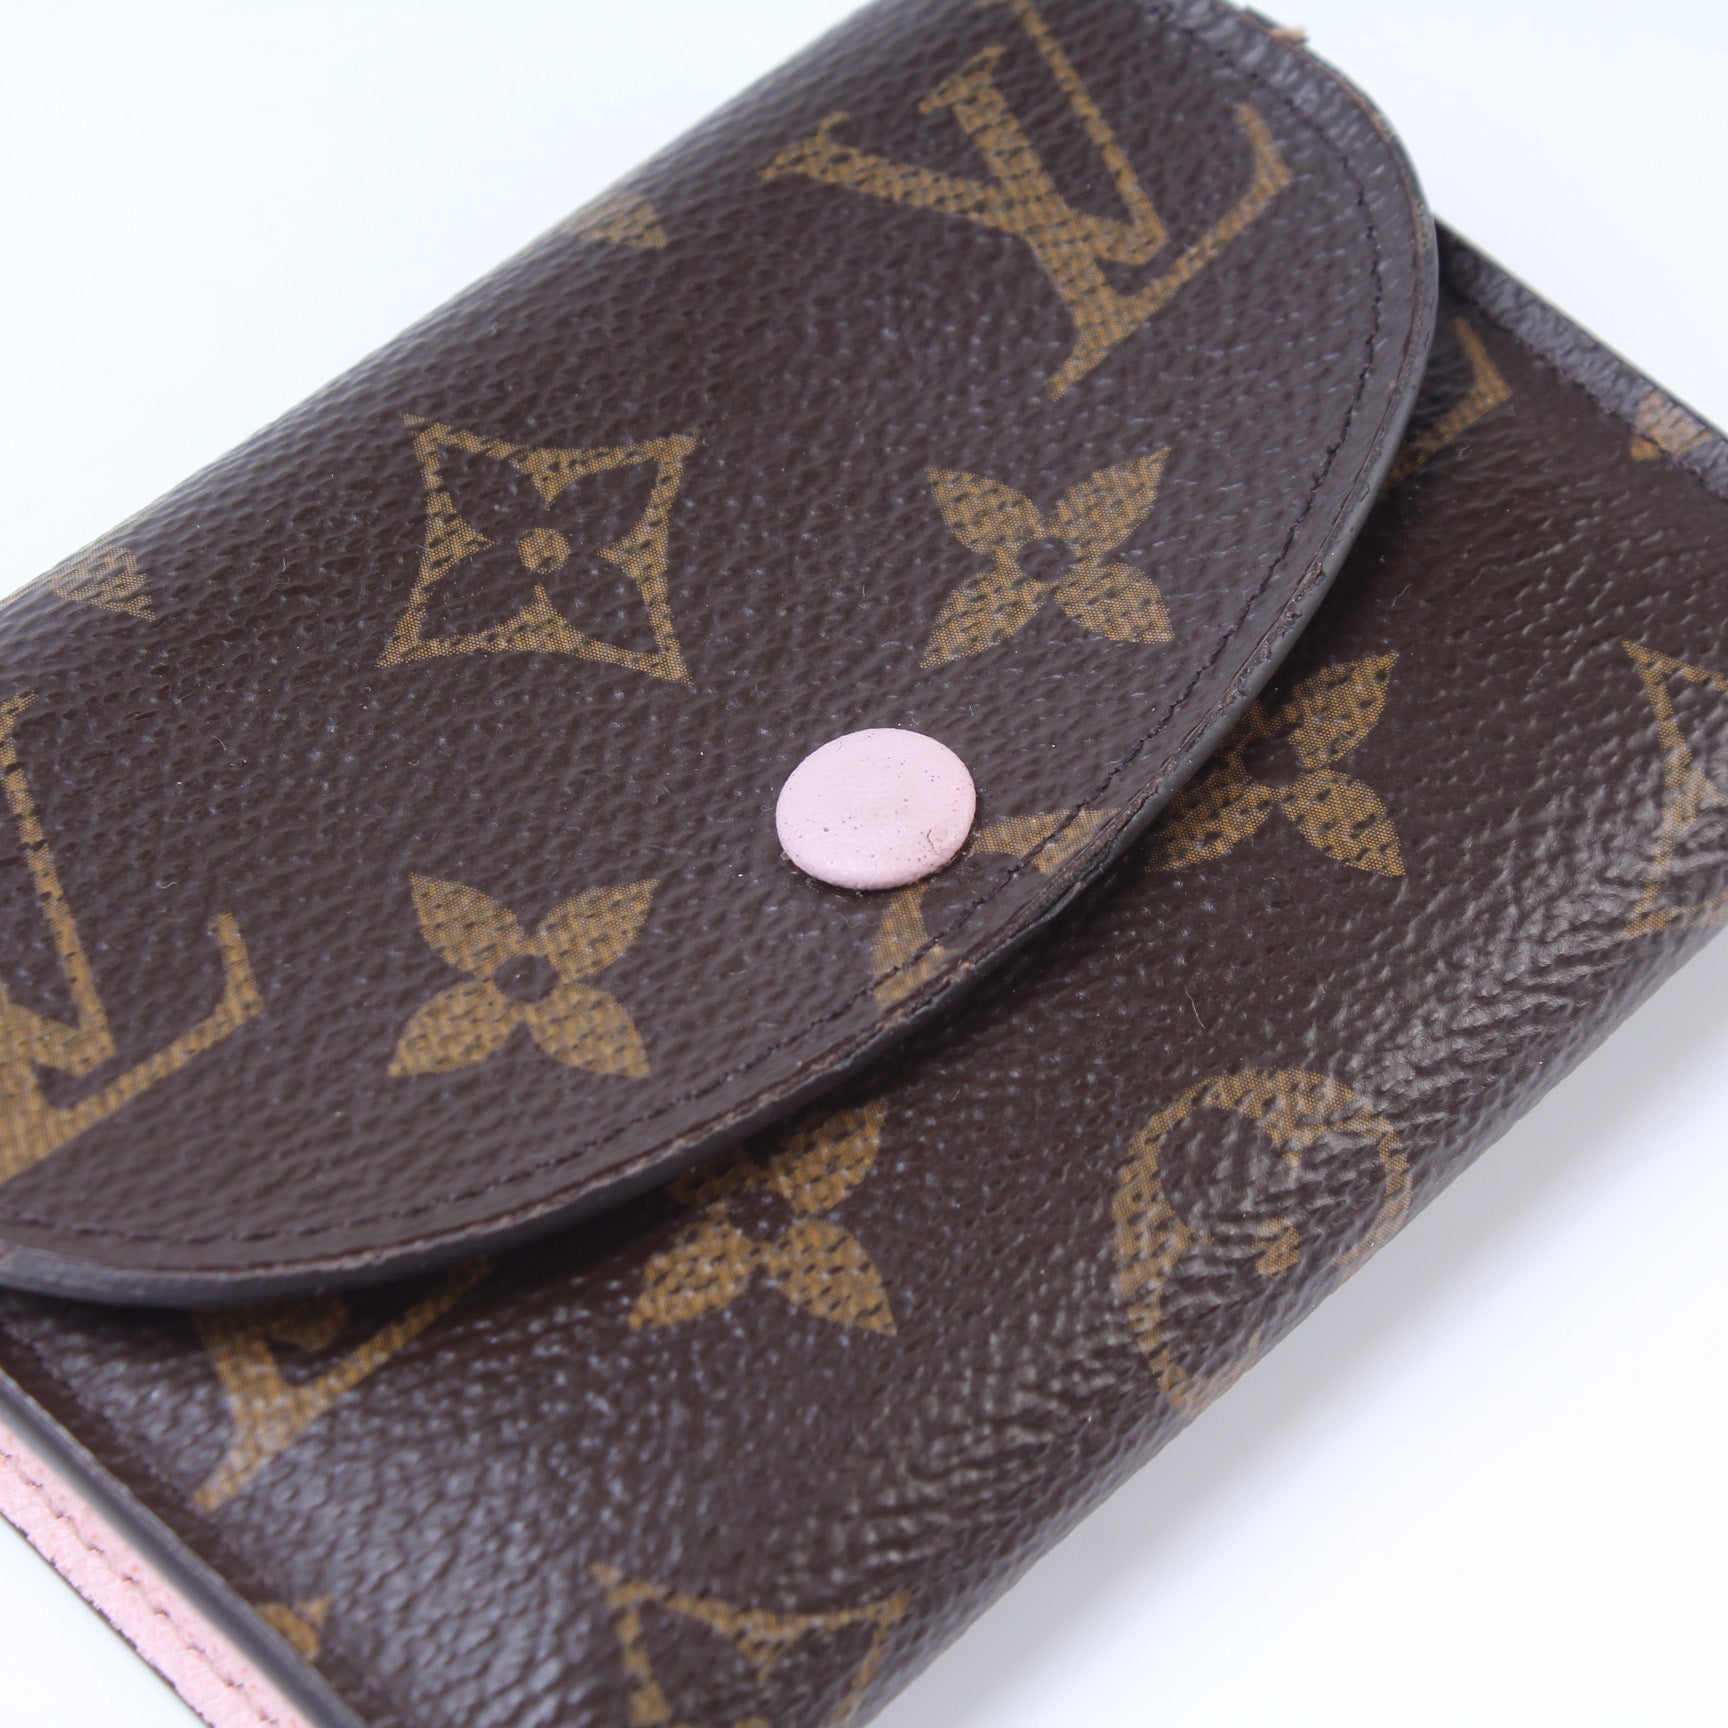 Louis Vuitton Rosalie Coin Purse M82485 Lollipop Pink - https